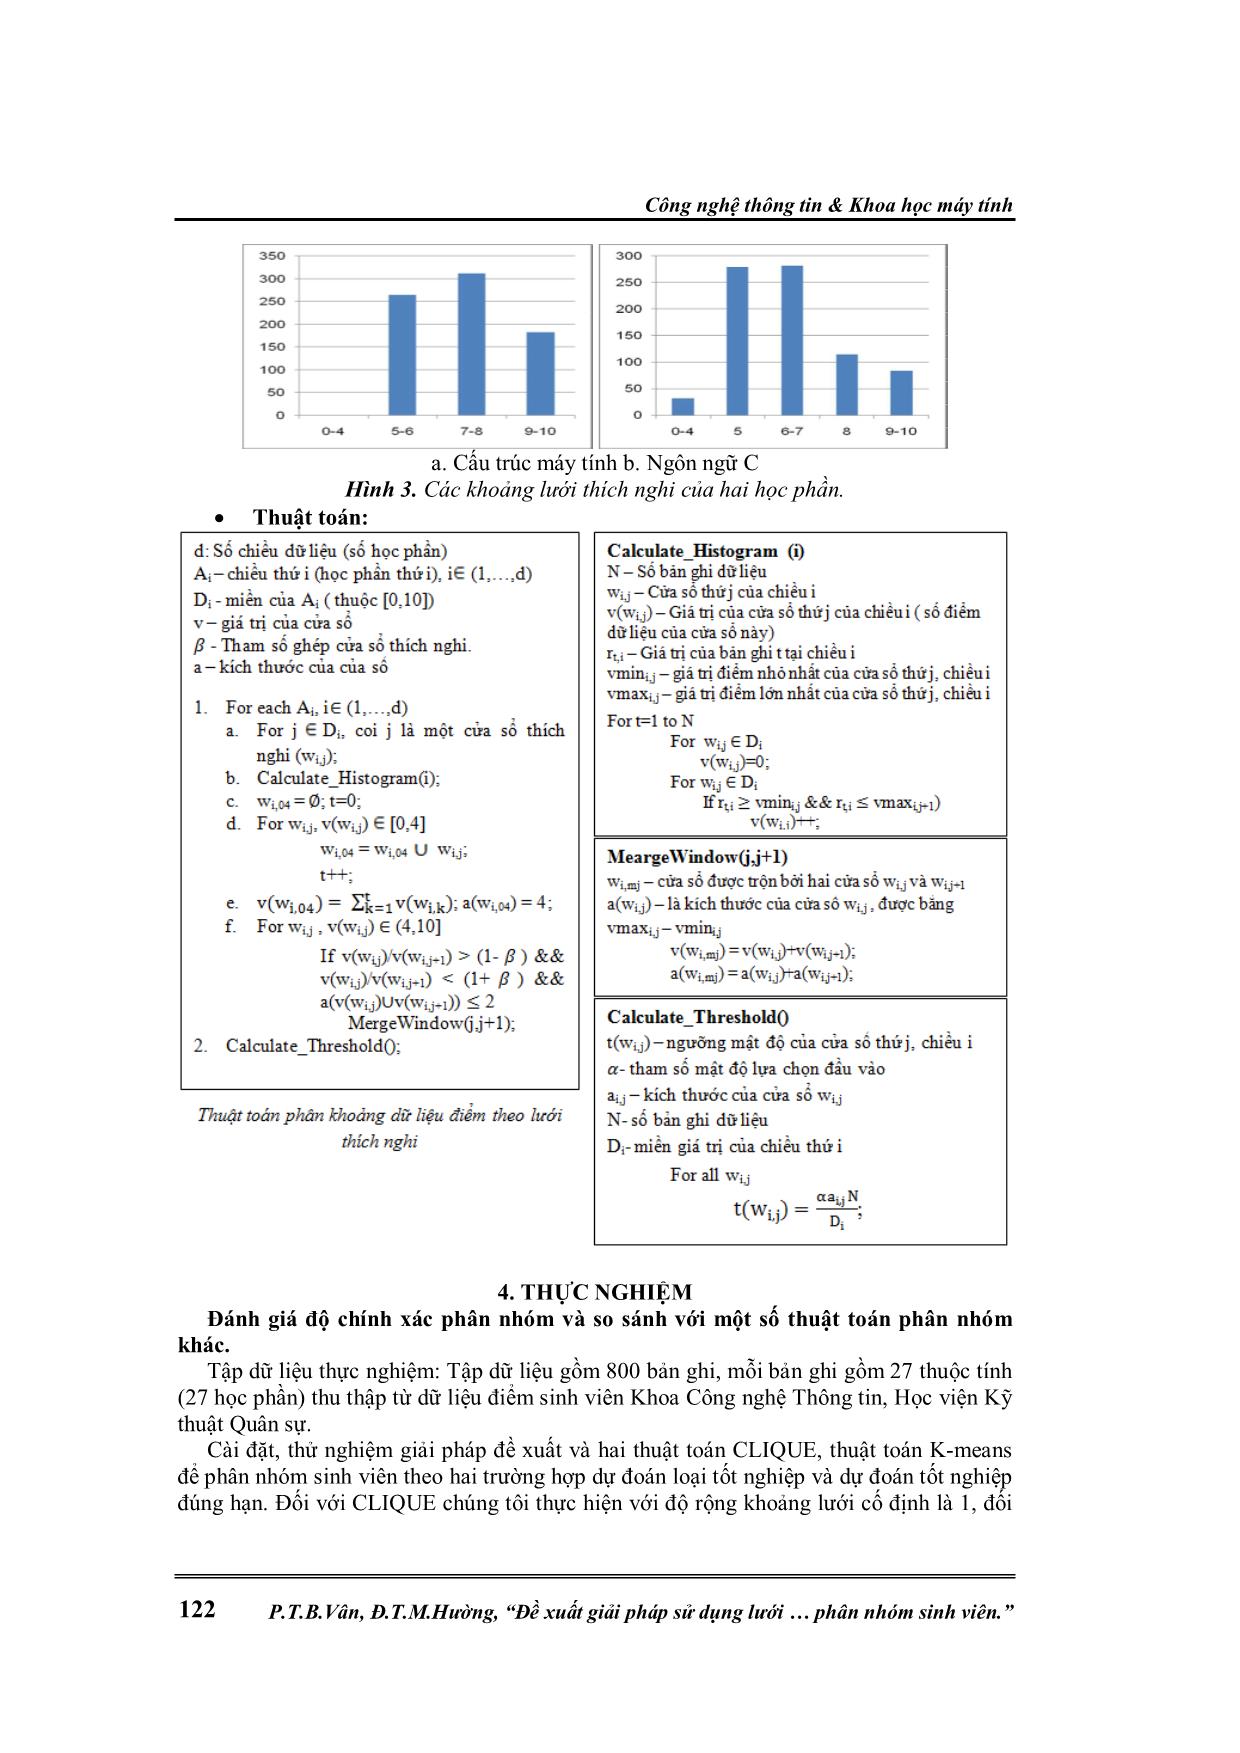 Đề xuất giải pháp sử dụng lưới thích nghi để nâng cao độ chính xác trong bài toán phân nhóm sinh viên trang 4